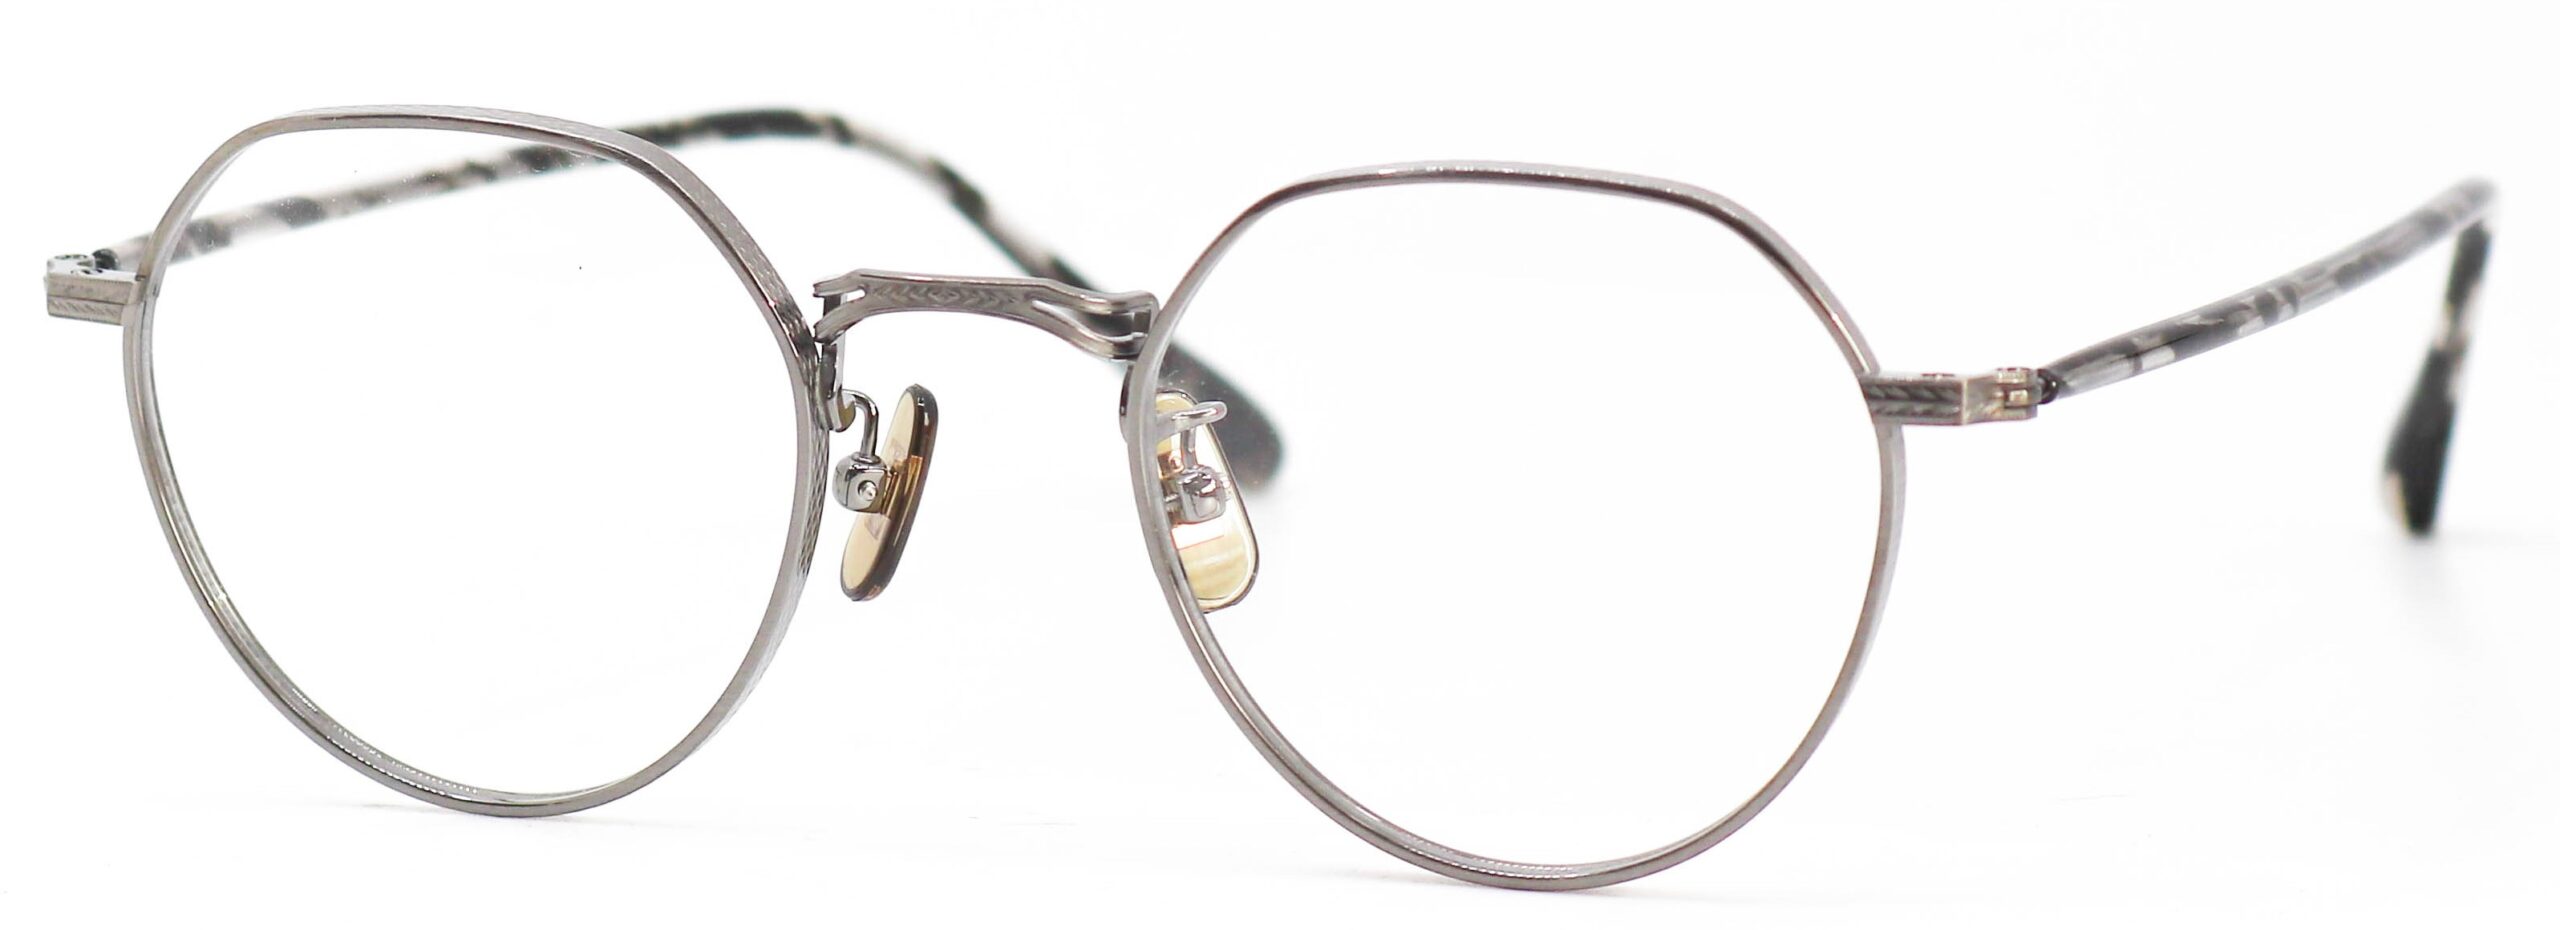 眼鏡のカラータイプC-7 At-Silver